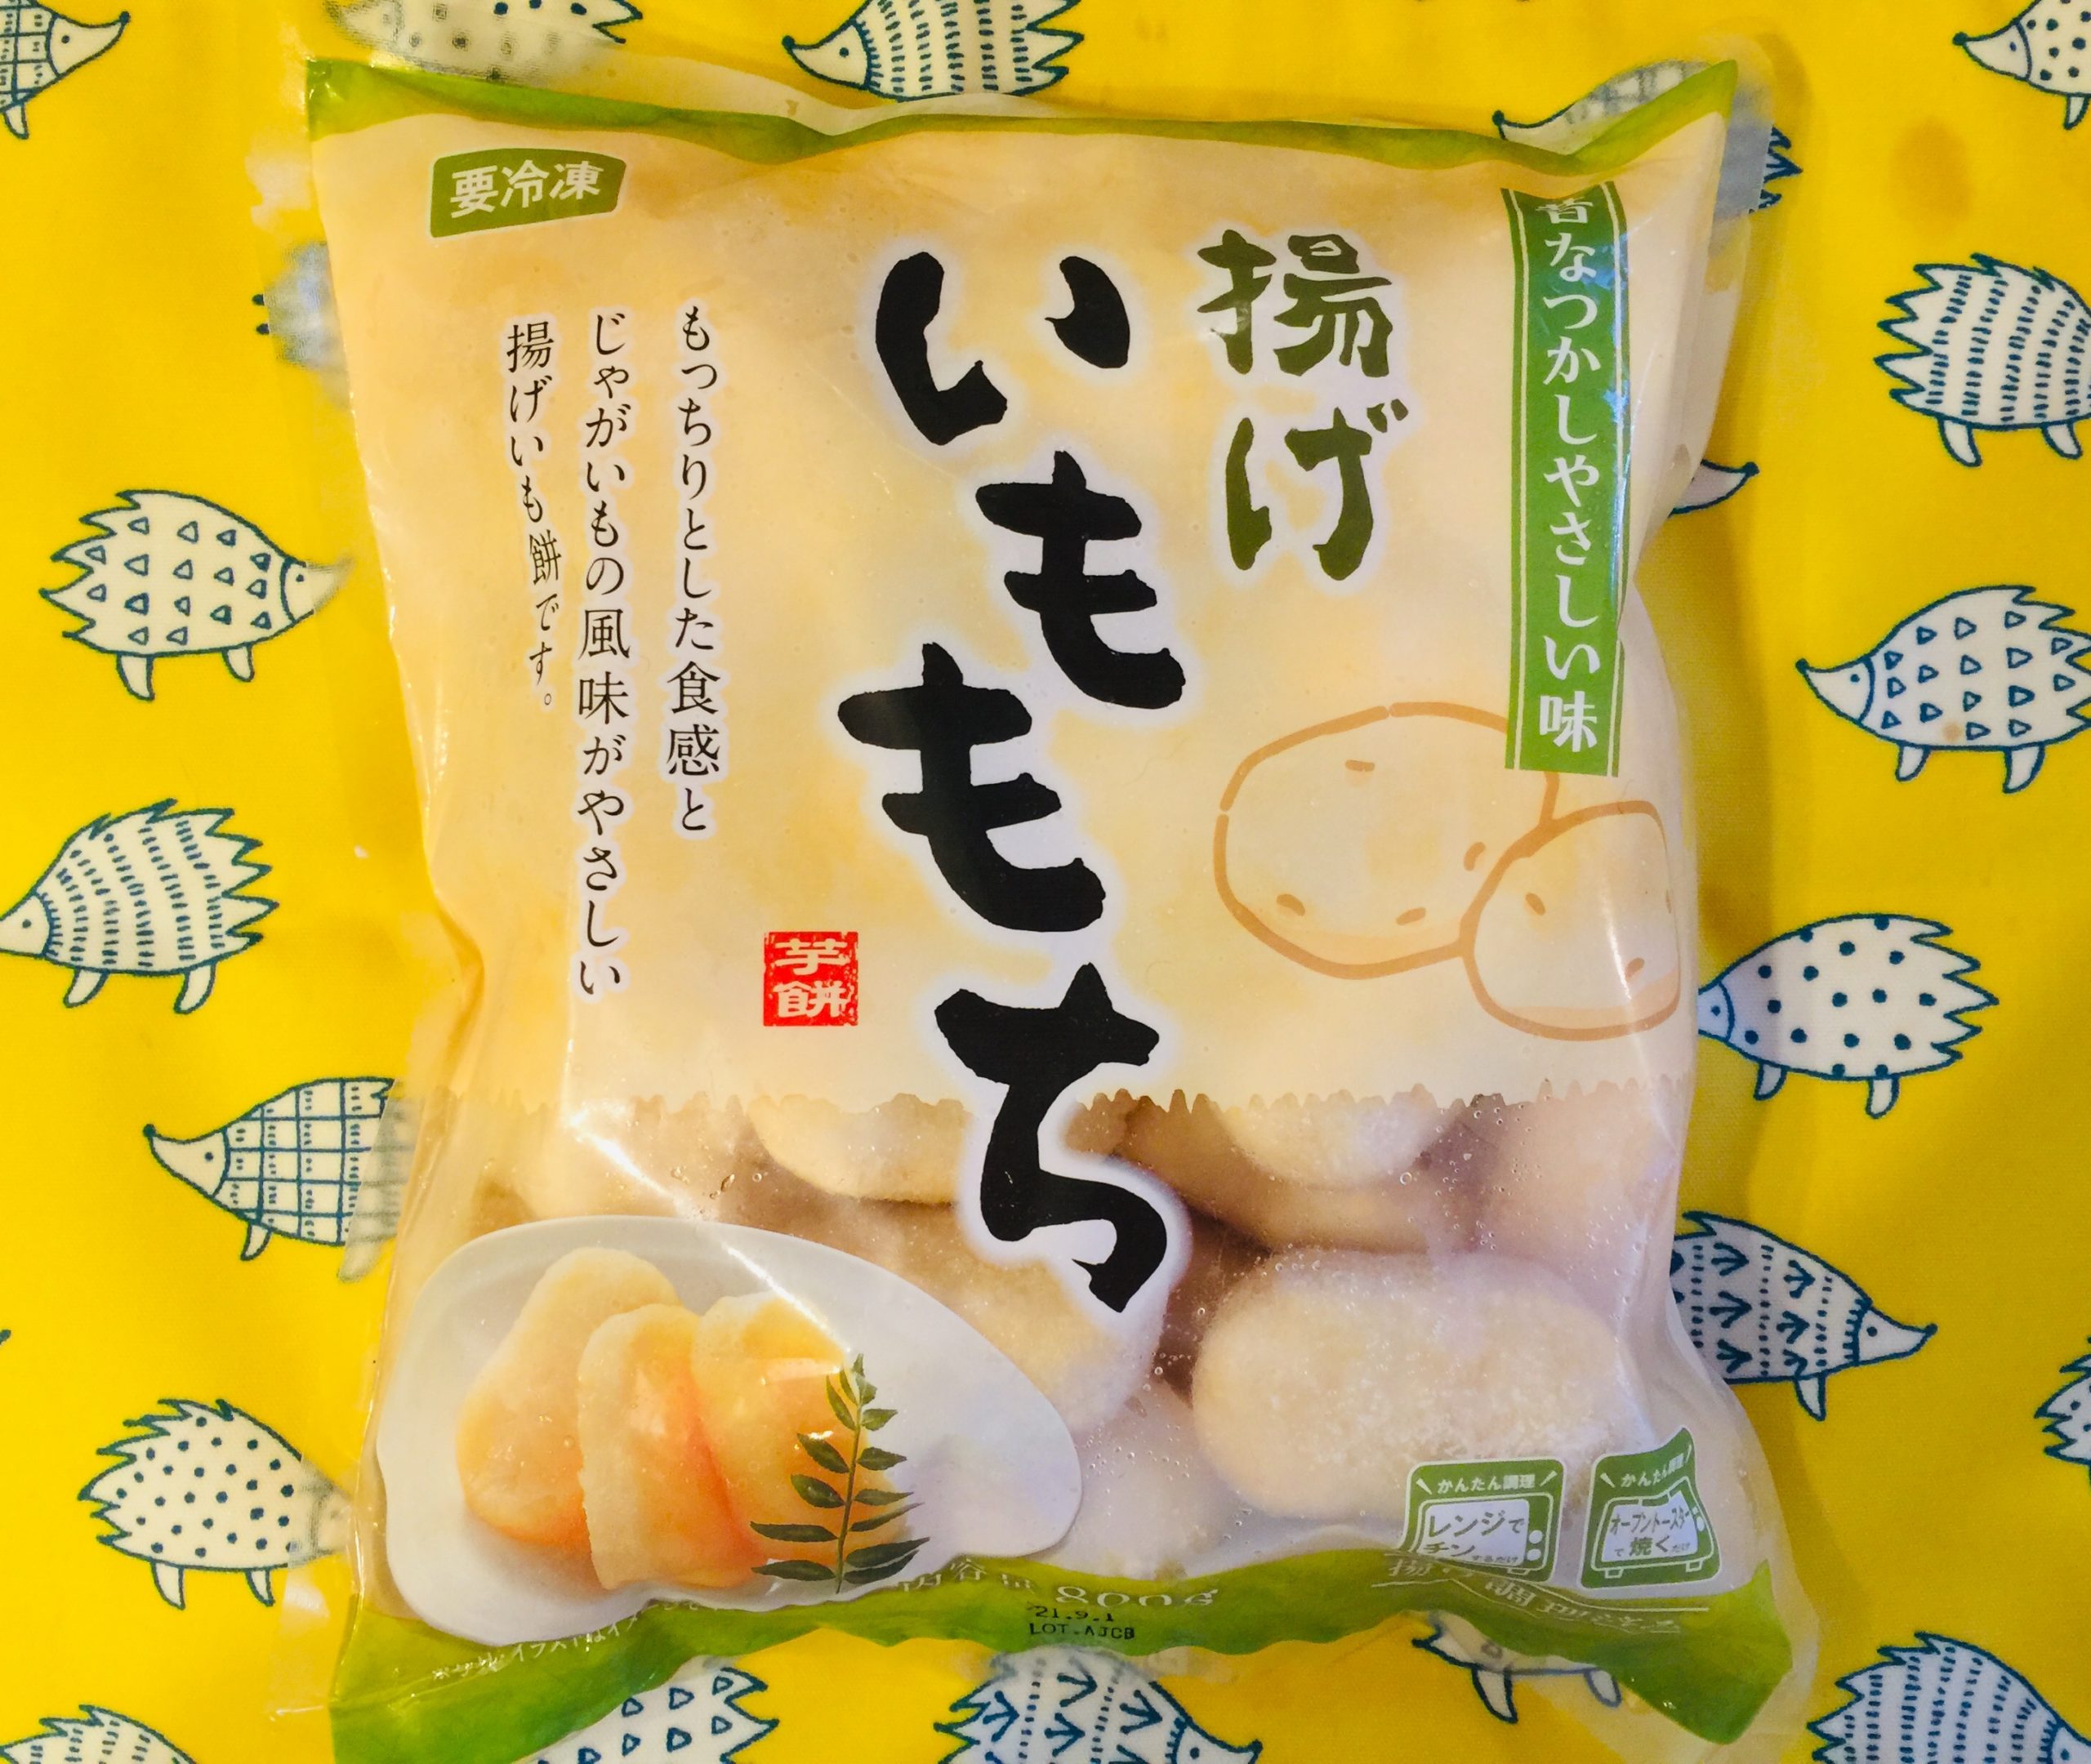 業務スーパー 冷凍 揚げいももち 島根県 業務スーパーの商品をレポートするブログ